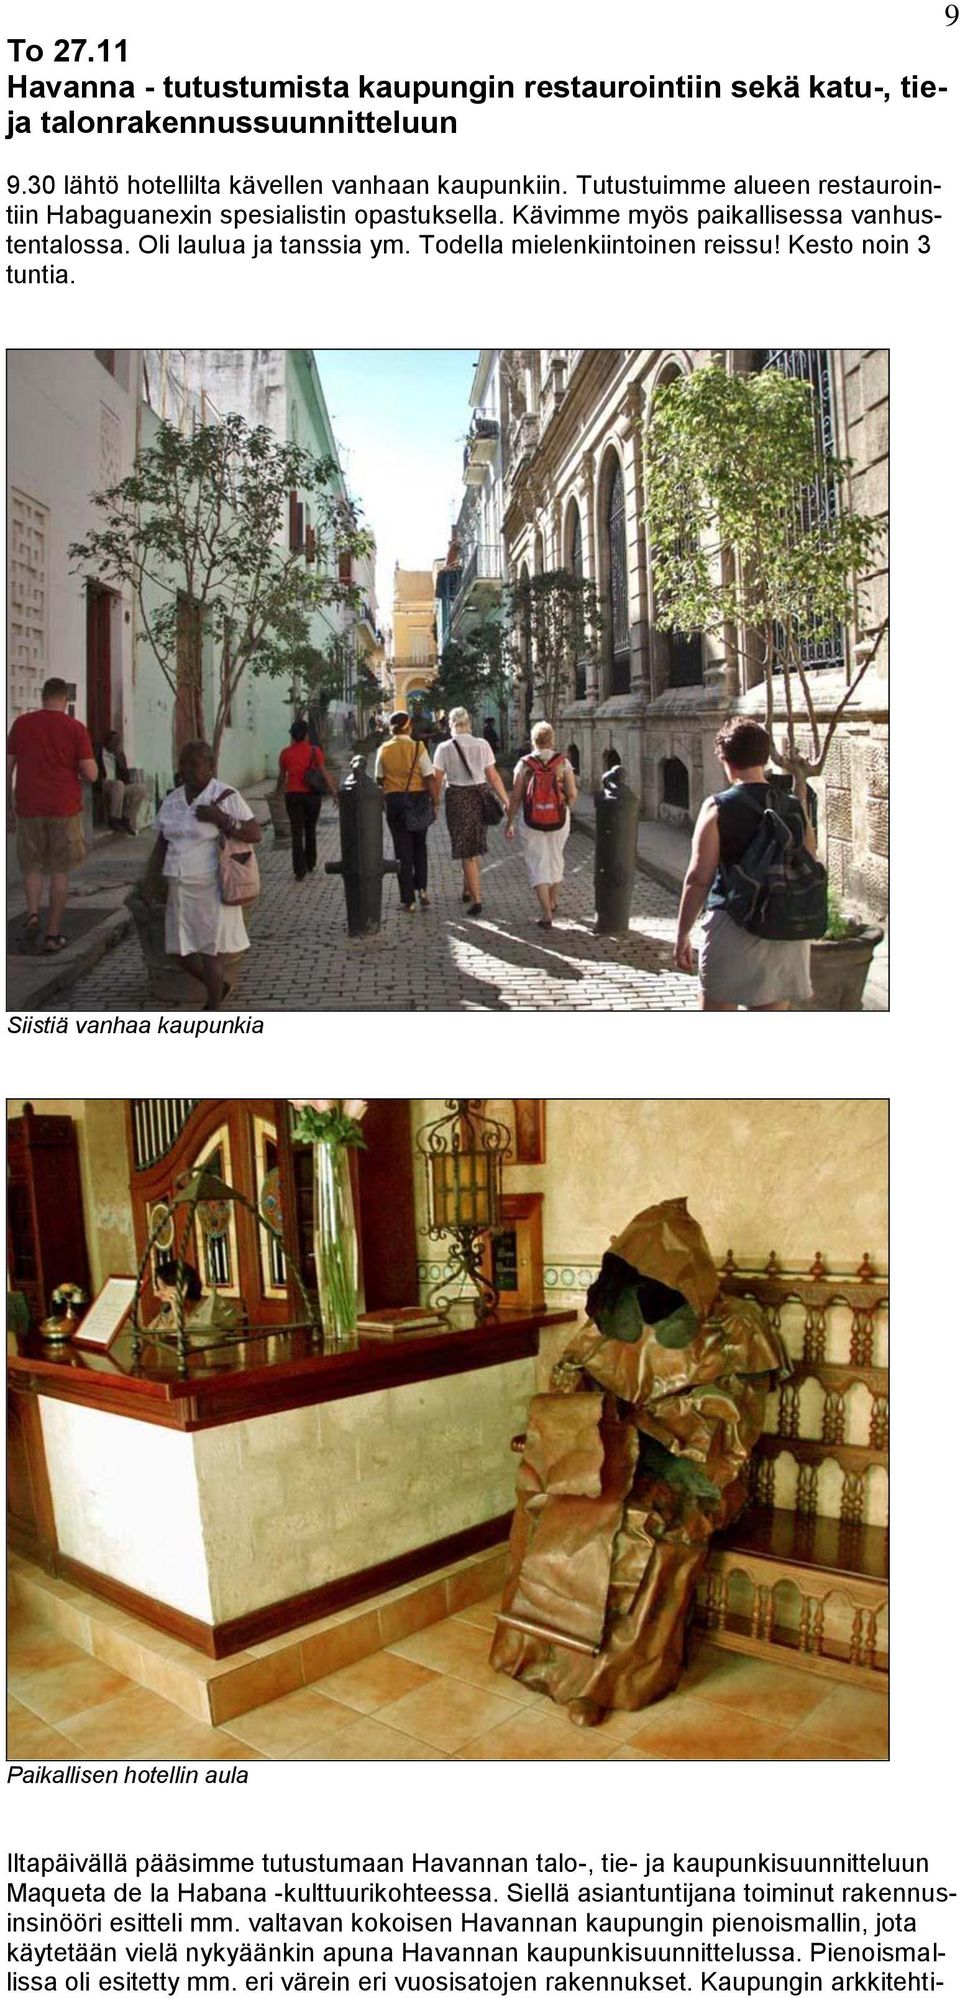 Siistiä vanhaa kaupunkia Paikallisen hotellin aula Iltapäivällä pääsimme tutustumaan Havannan talo-, tie- ja kaupunkisuunnitteluun Maqueta de la Habana -kulttuurikohteessa.